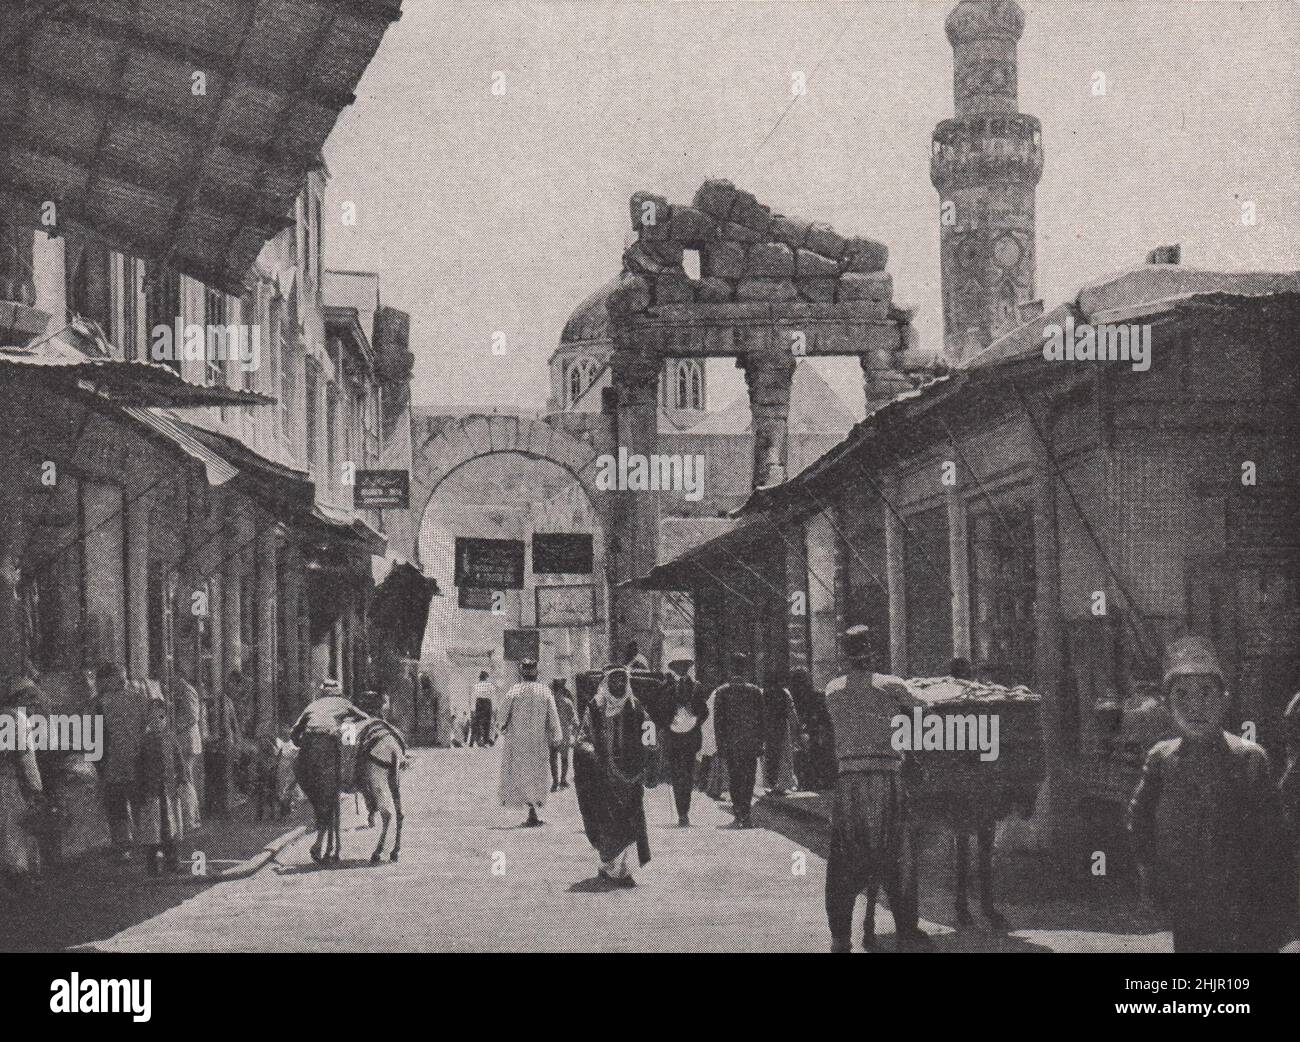 Puerta de entrada de los días greco-romanos por el famoso minarete octogonal. Siria. Damasco (1923) Foto de stock